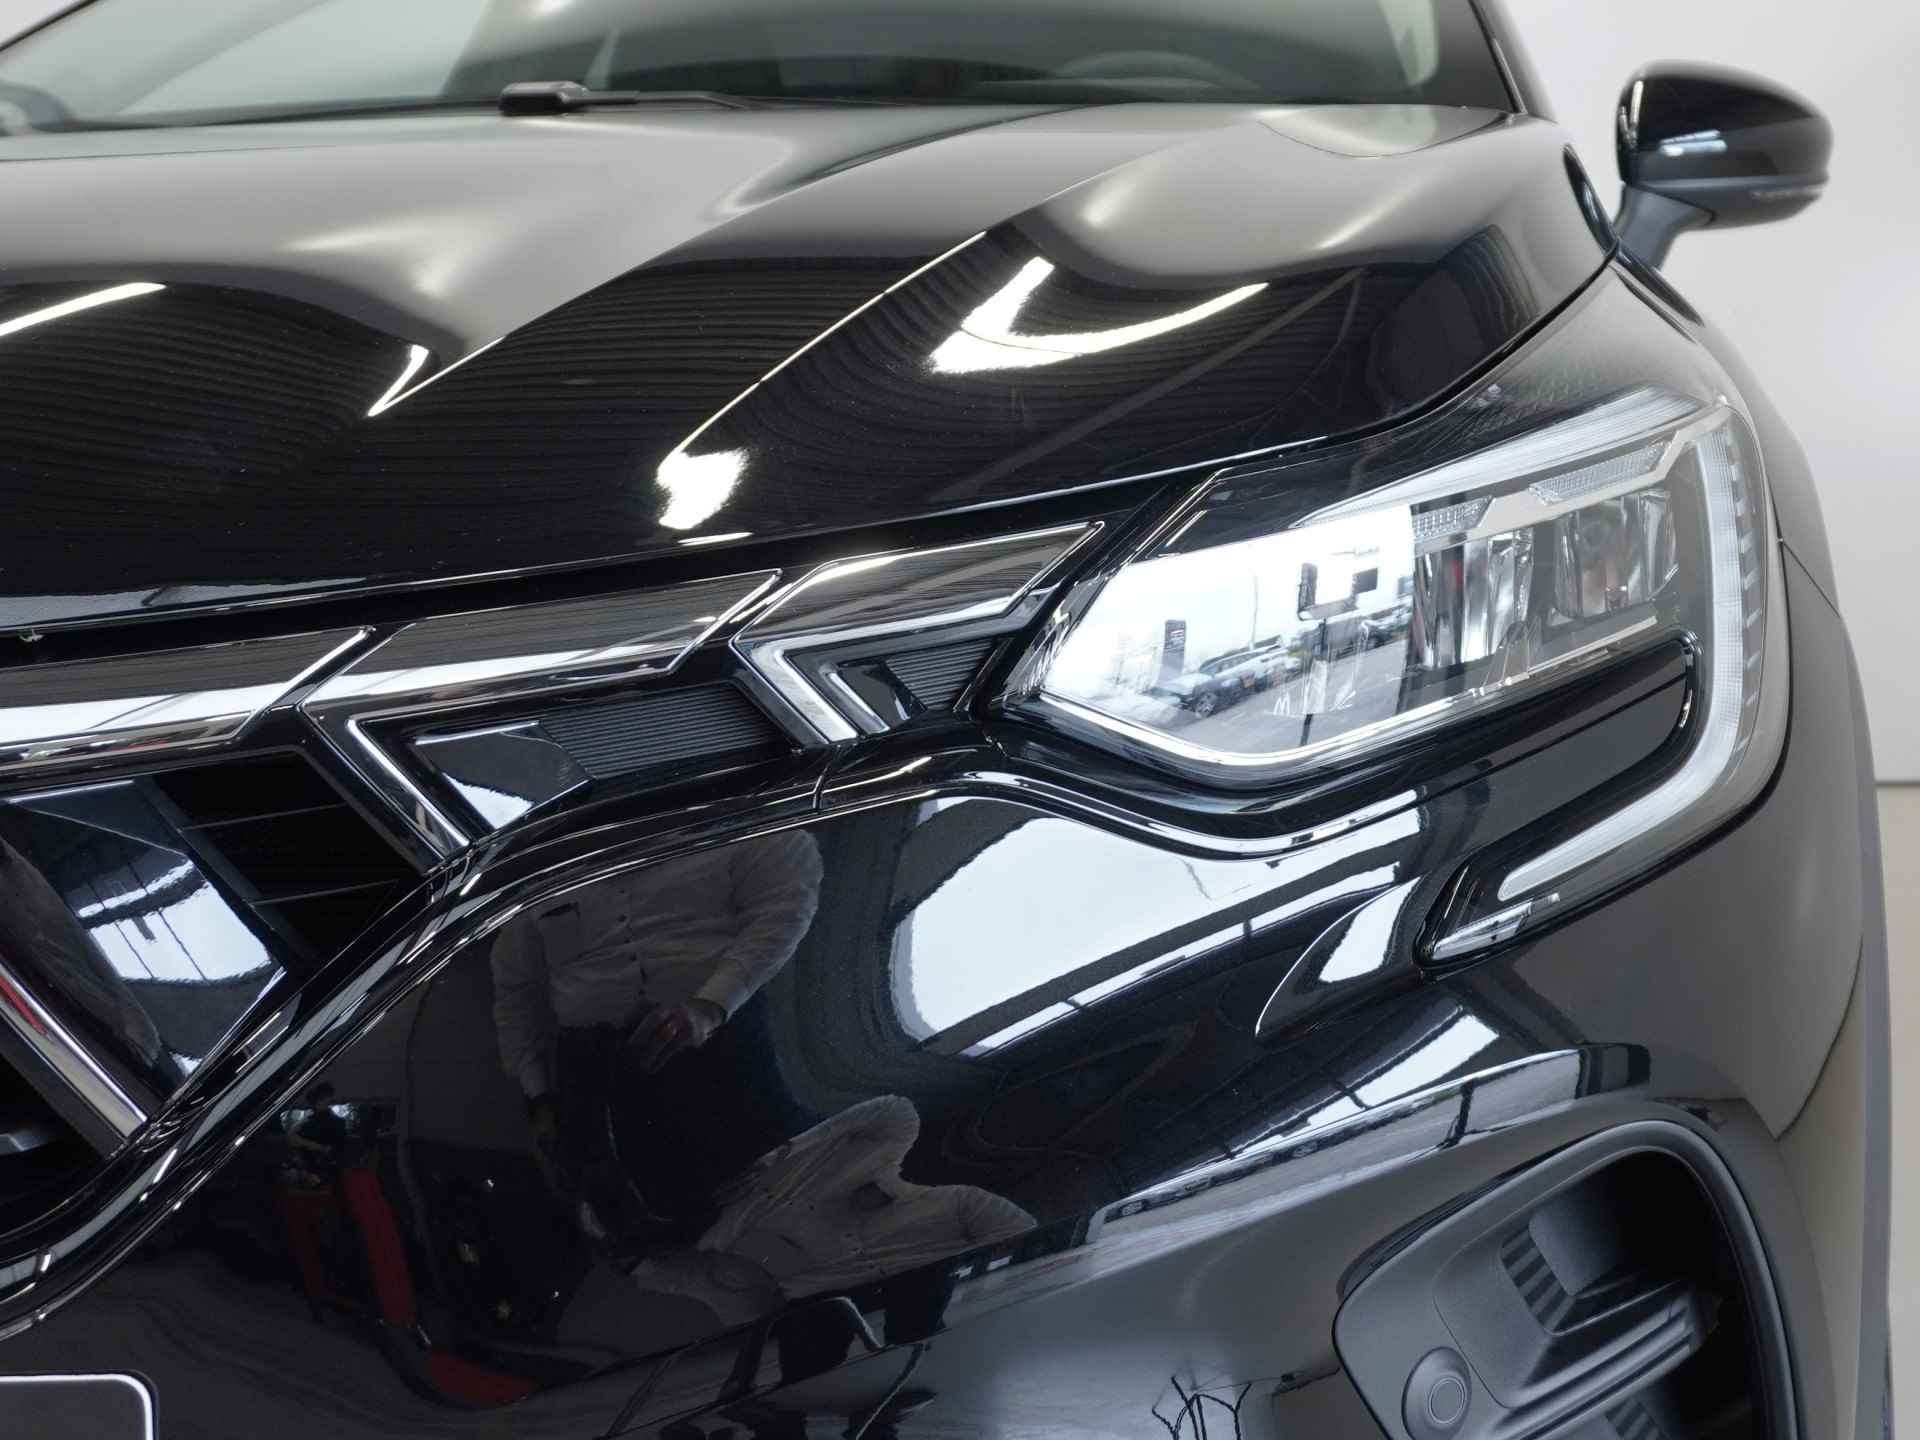 Mitsubishi ASX 1.3 DI-T Intense 140Pk | Registratiebonus €3.000,-! | Nu geheel rijklaar van €33.820,- voor €30.820,- incl. 8 jaar garantie - 8/40